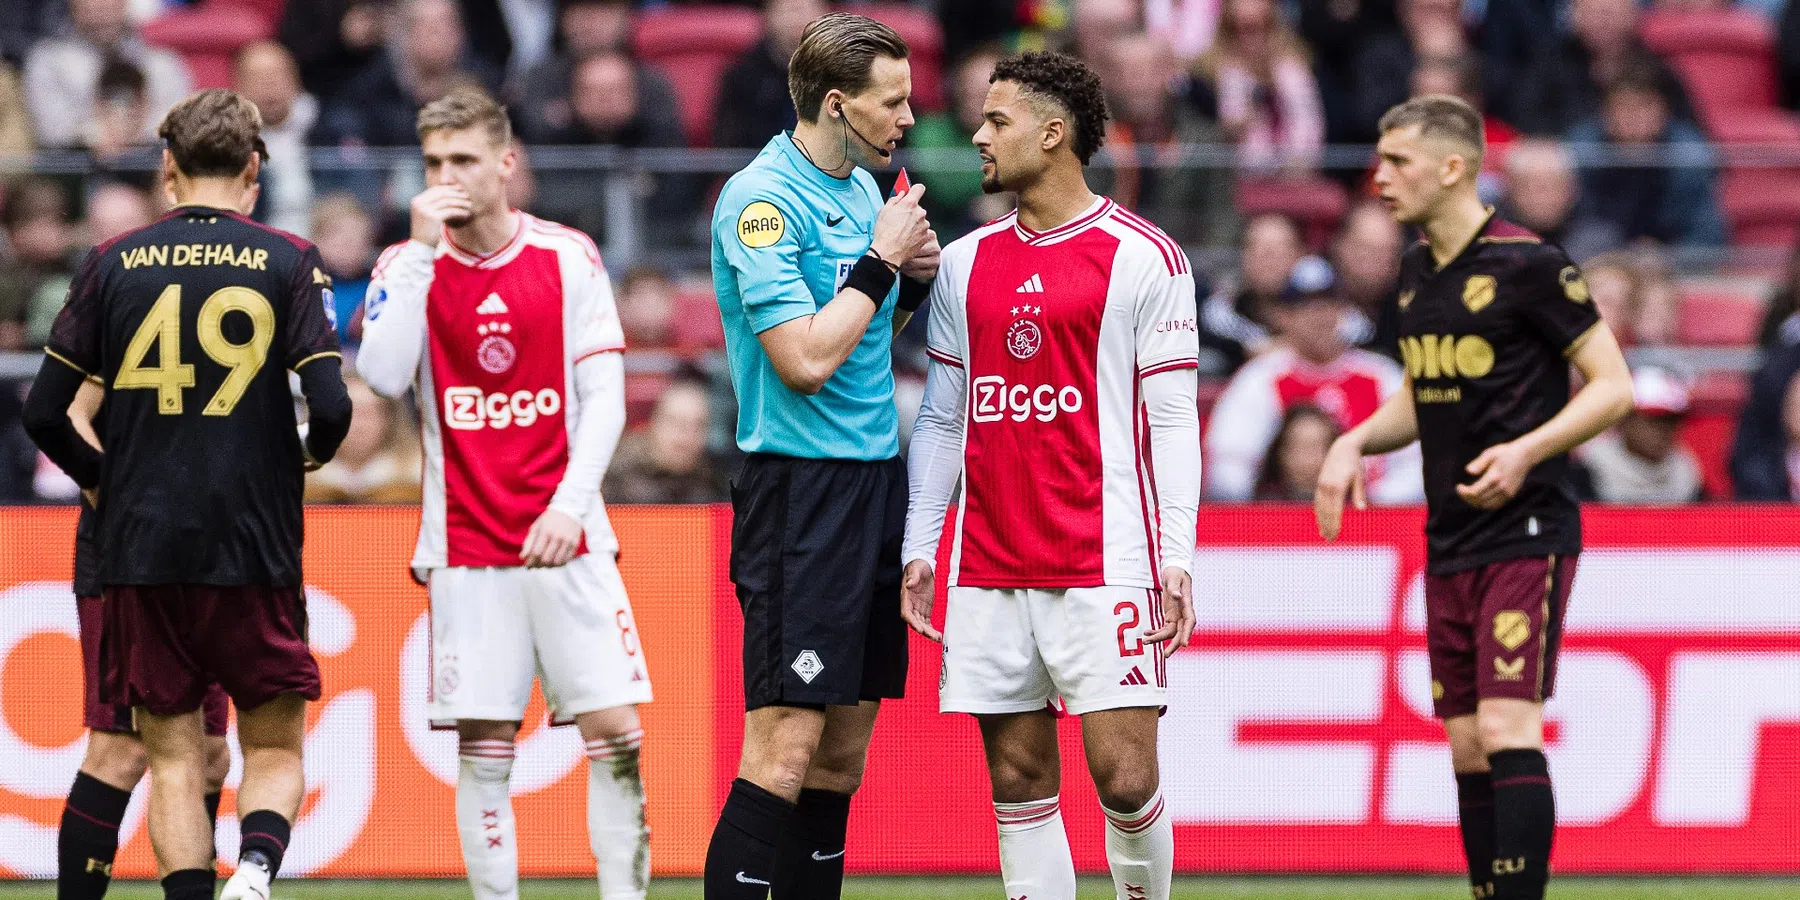 Rensch is door de KNVB voor drie wedstrijden waarvan één voorwaardelijk geschorst